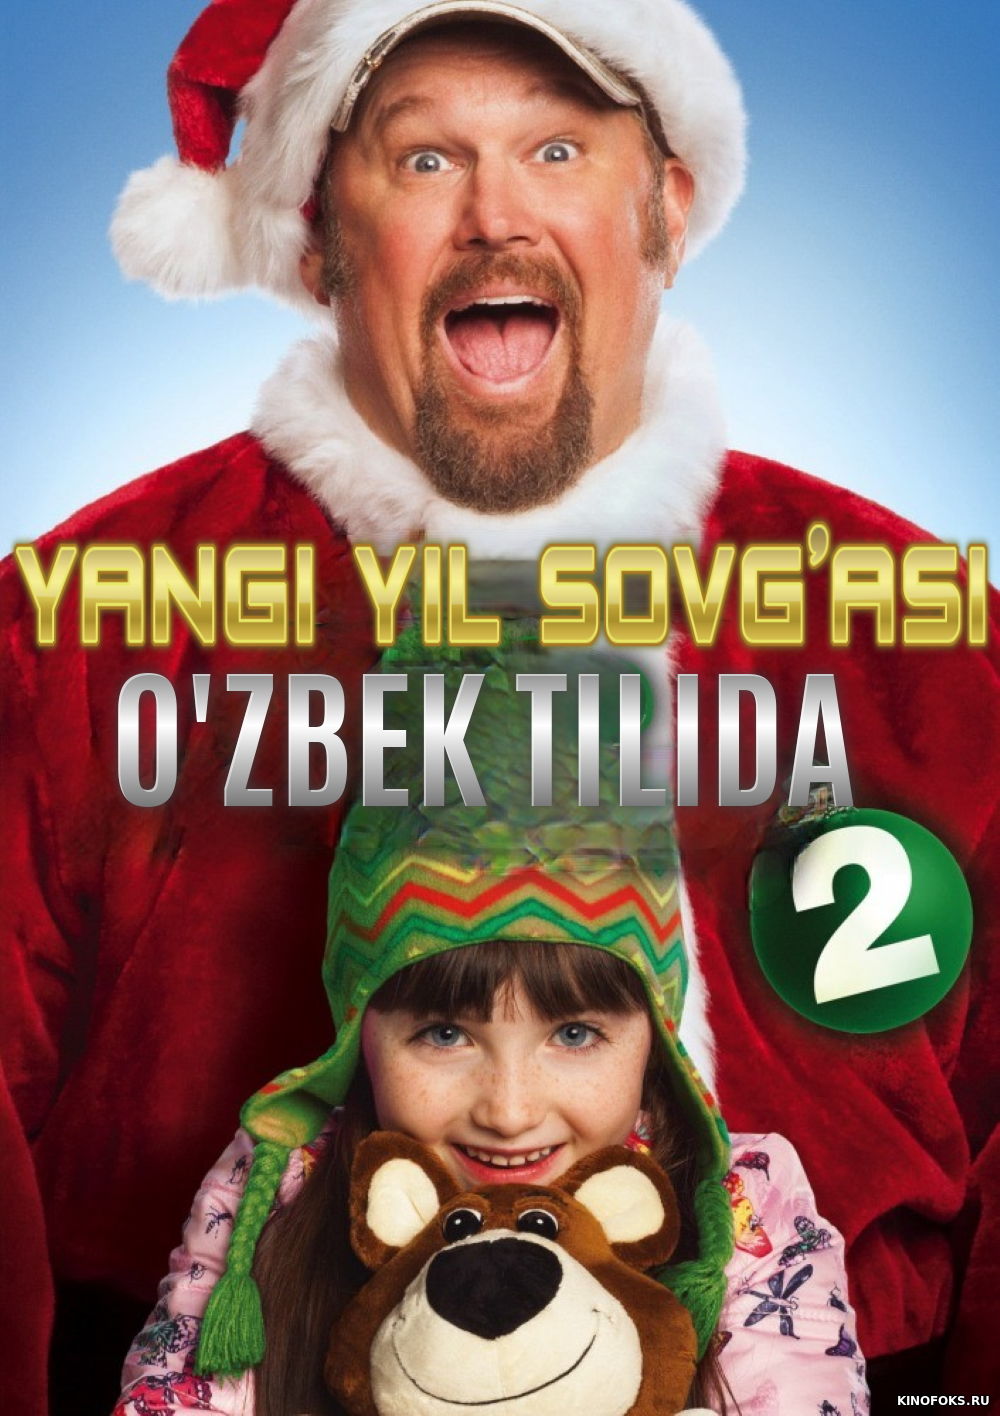 Yangi yil sovg'asi 2 Uzbek tilida 2014 kino